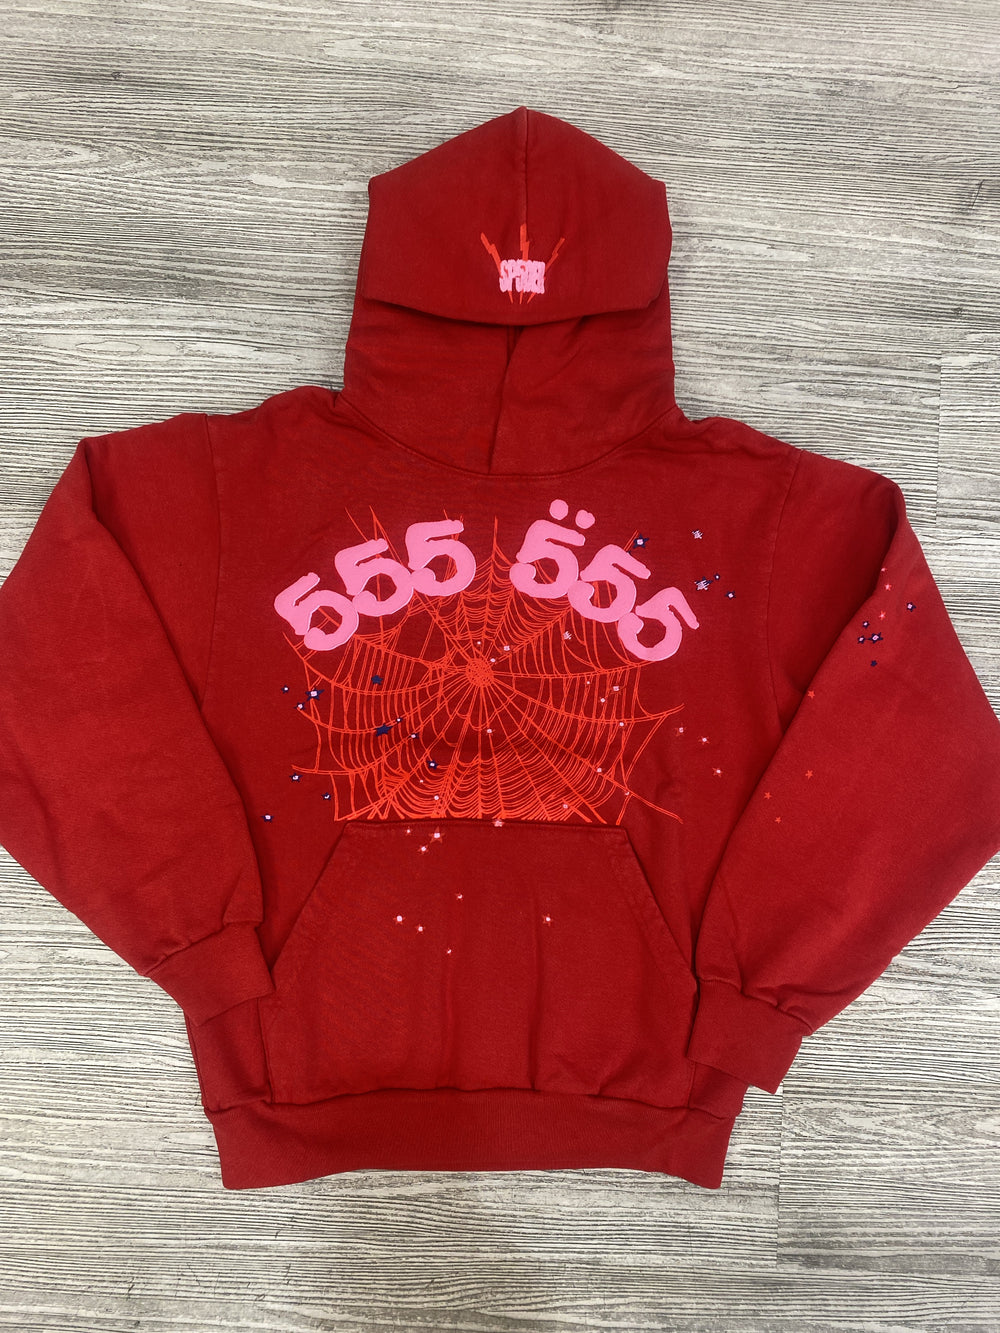 Sp5der-555 hoodie